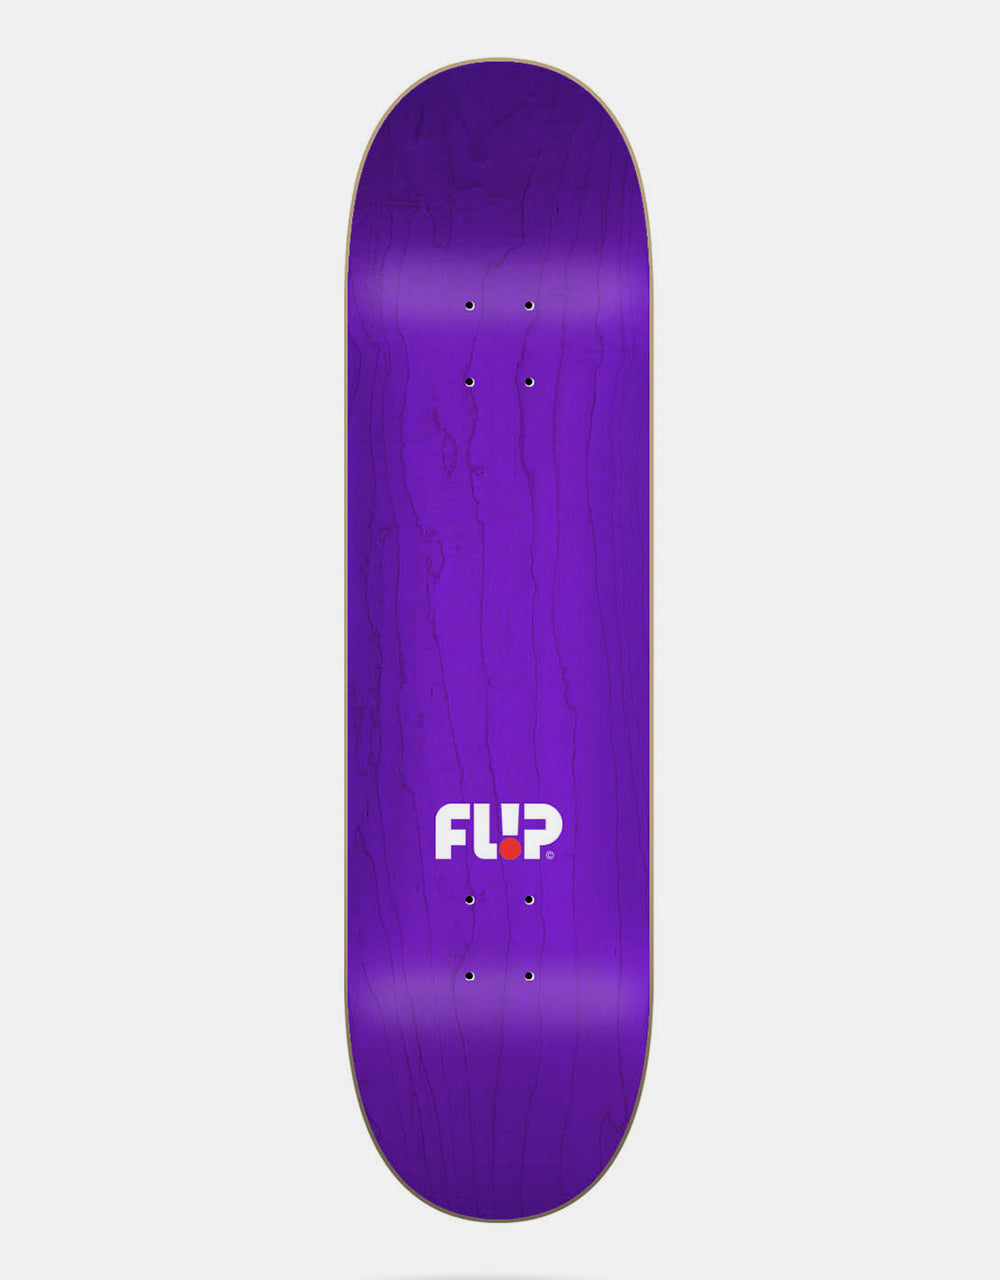 Flip Saari Classic Skateboard Deck - 8.5"